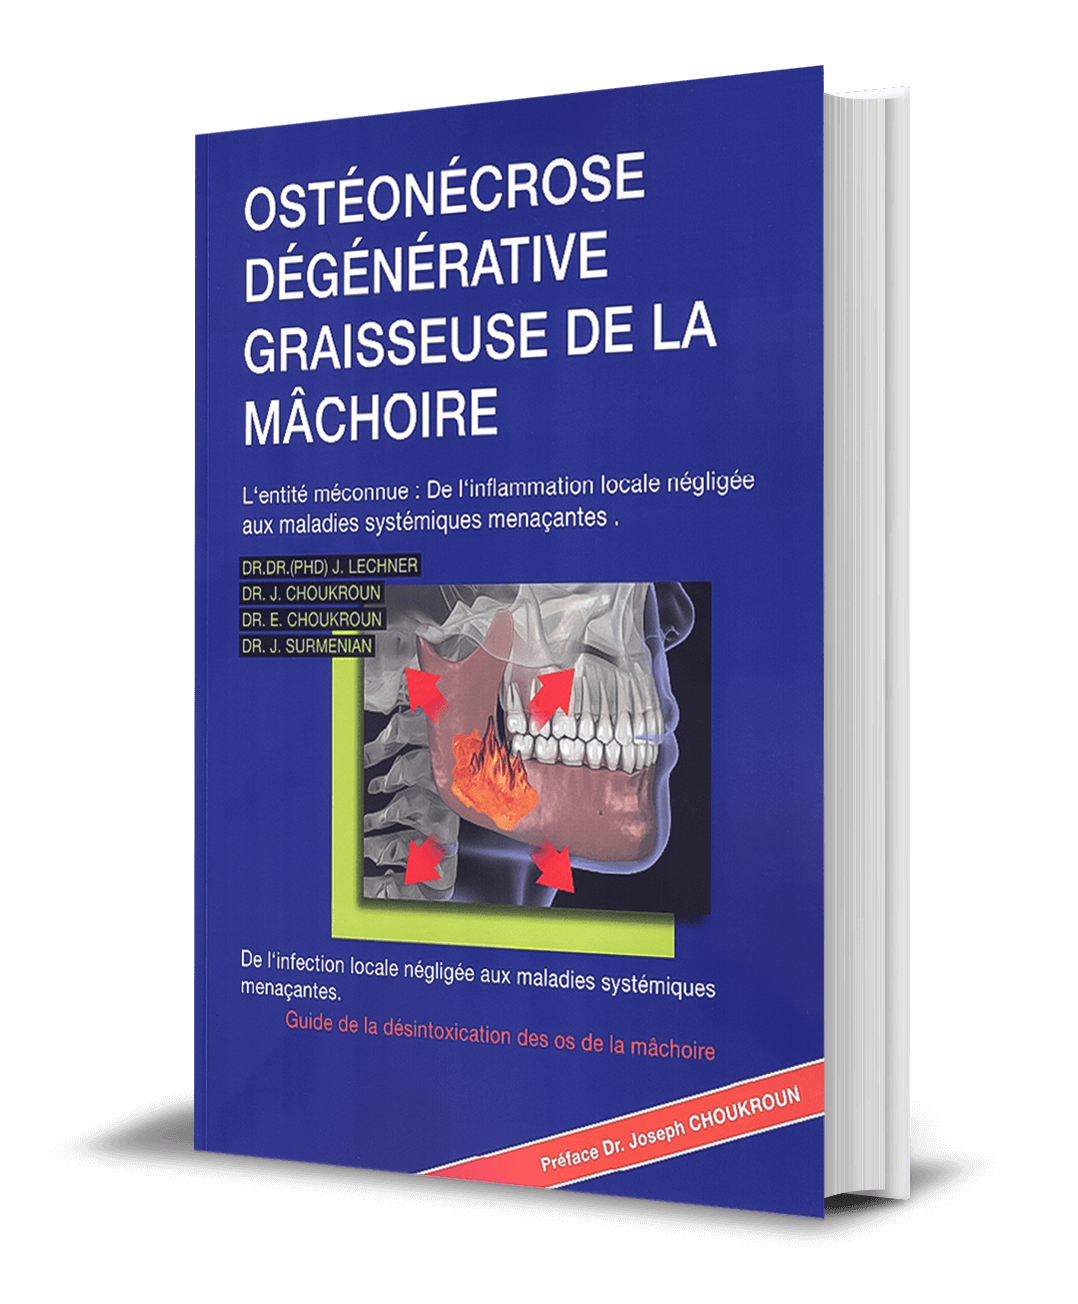 BOOK in French: "Ostéonécrose Cavitaire de l'os de la mâchoire"